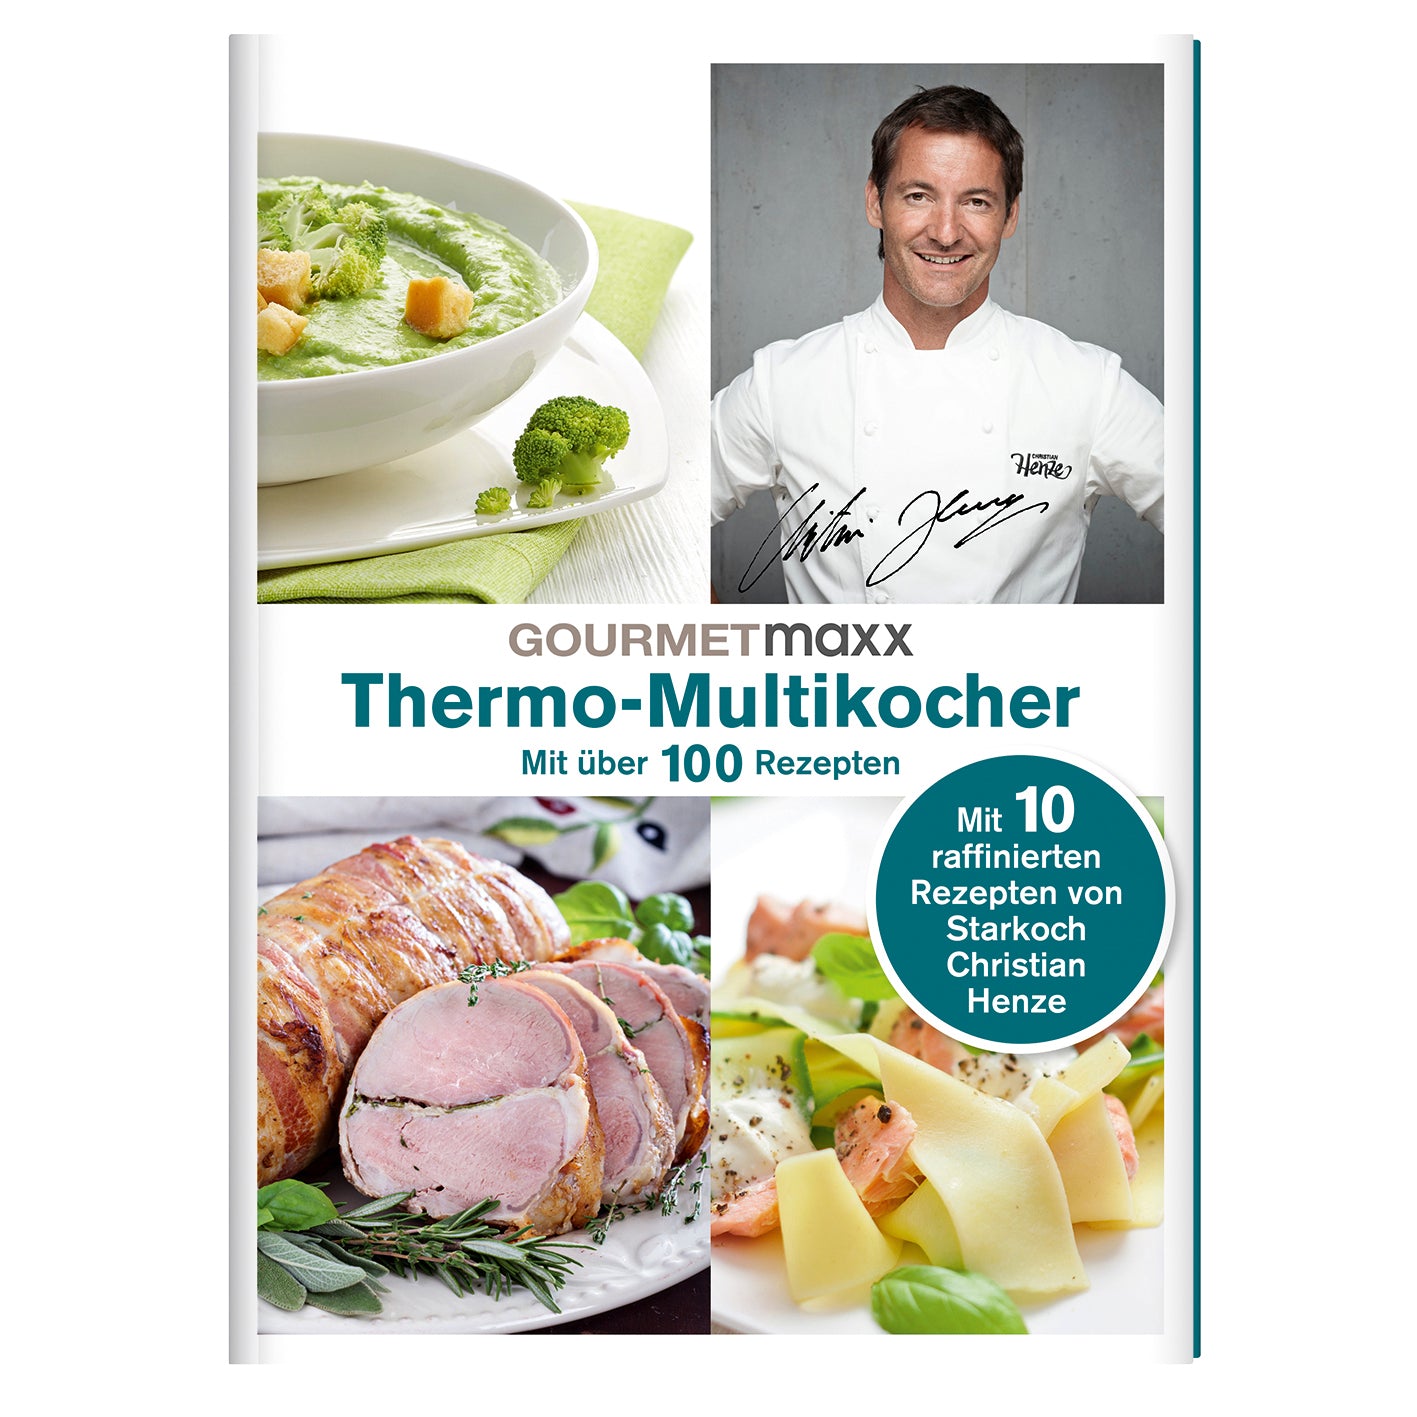 Buch Thermo-Multikocher mit Rezepten von Henze von GOURMETmaxx